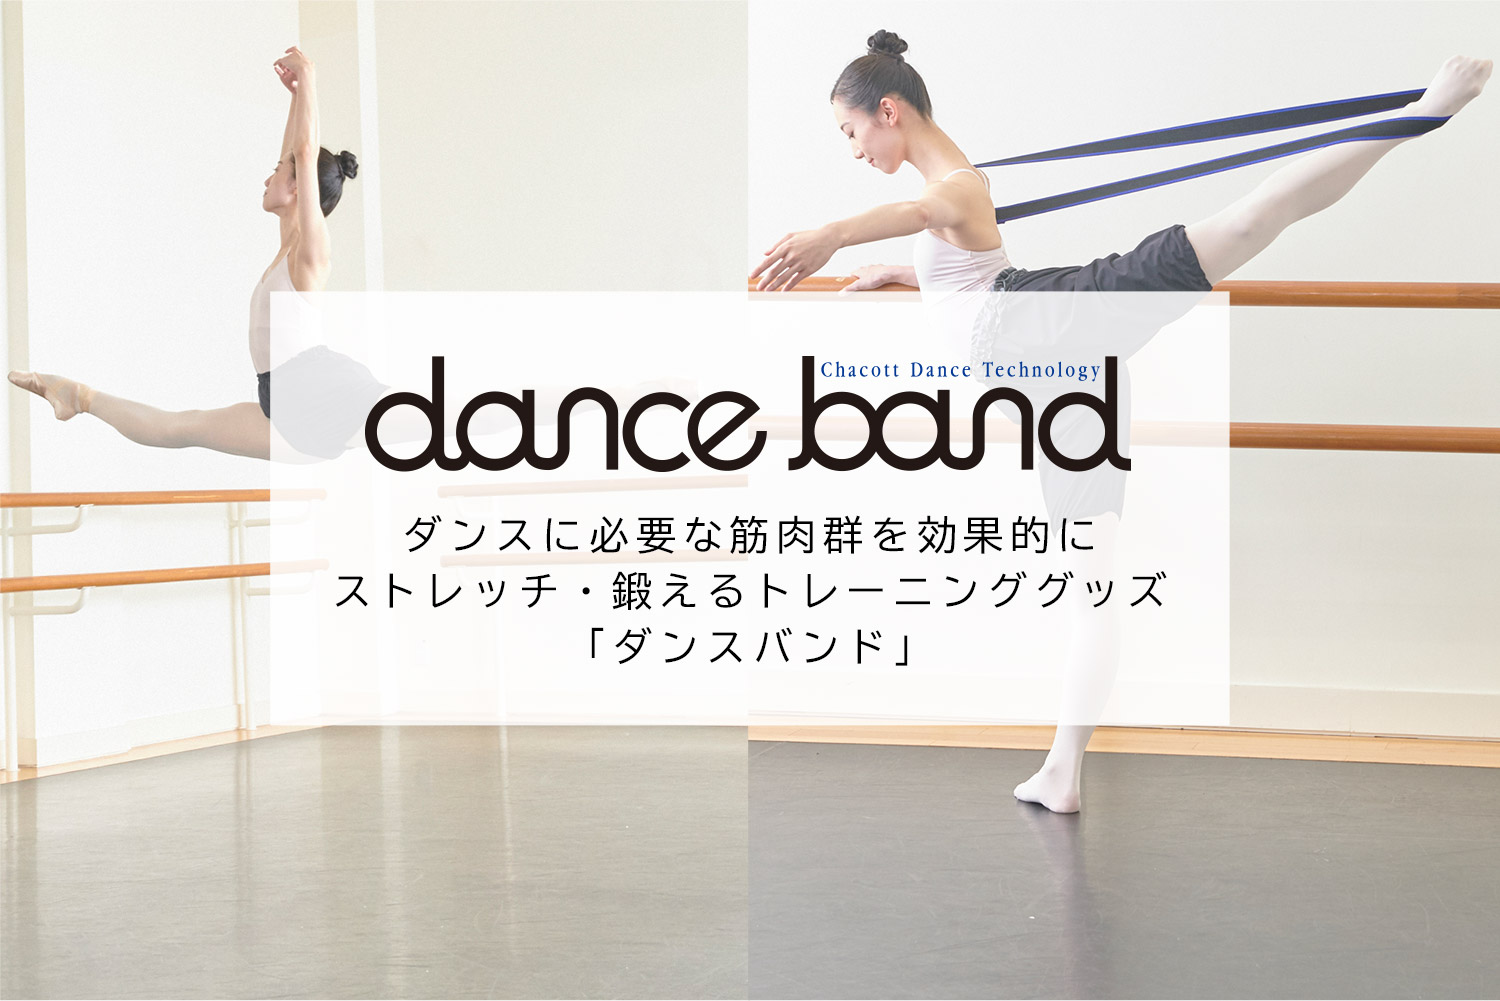 鍛えるトレーニンググッズ「dance band（ダンスバンド）」